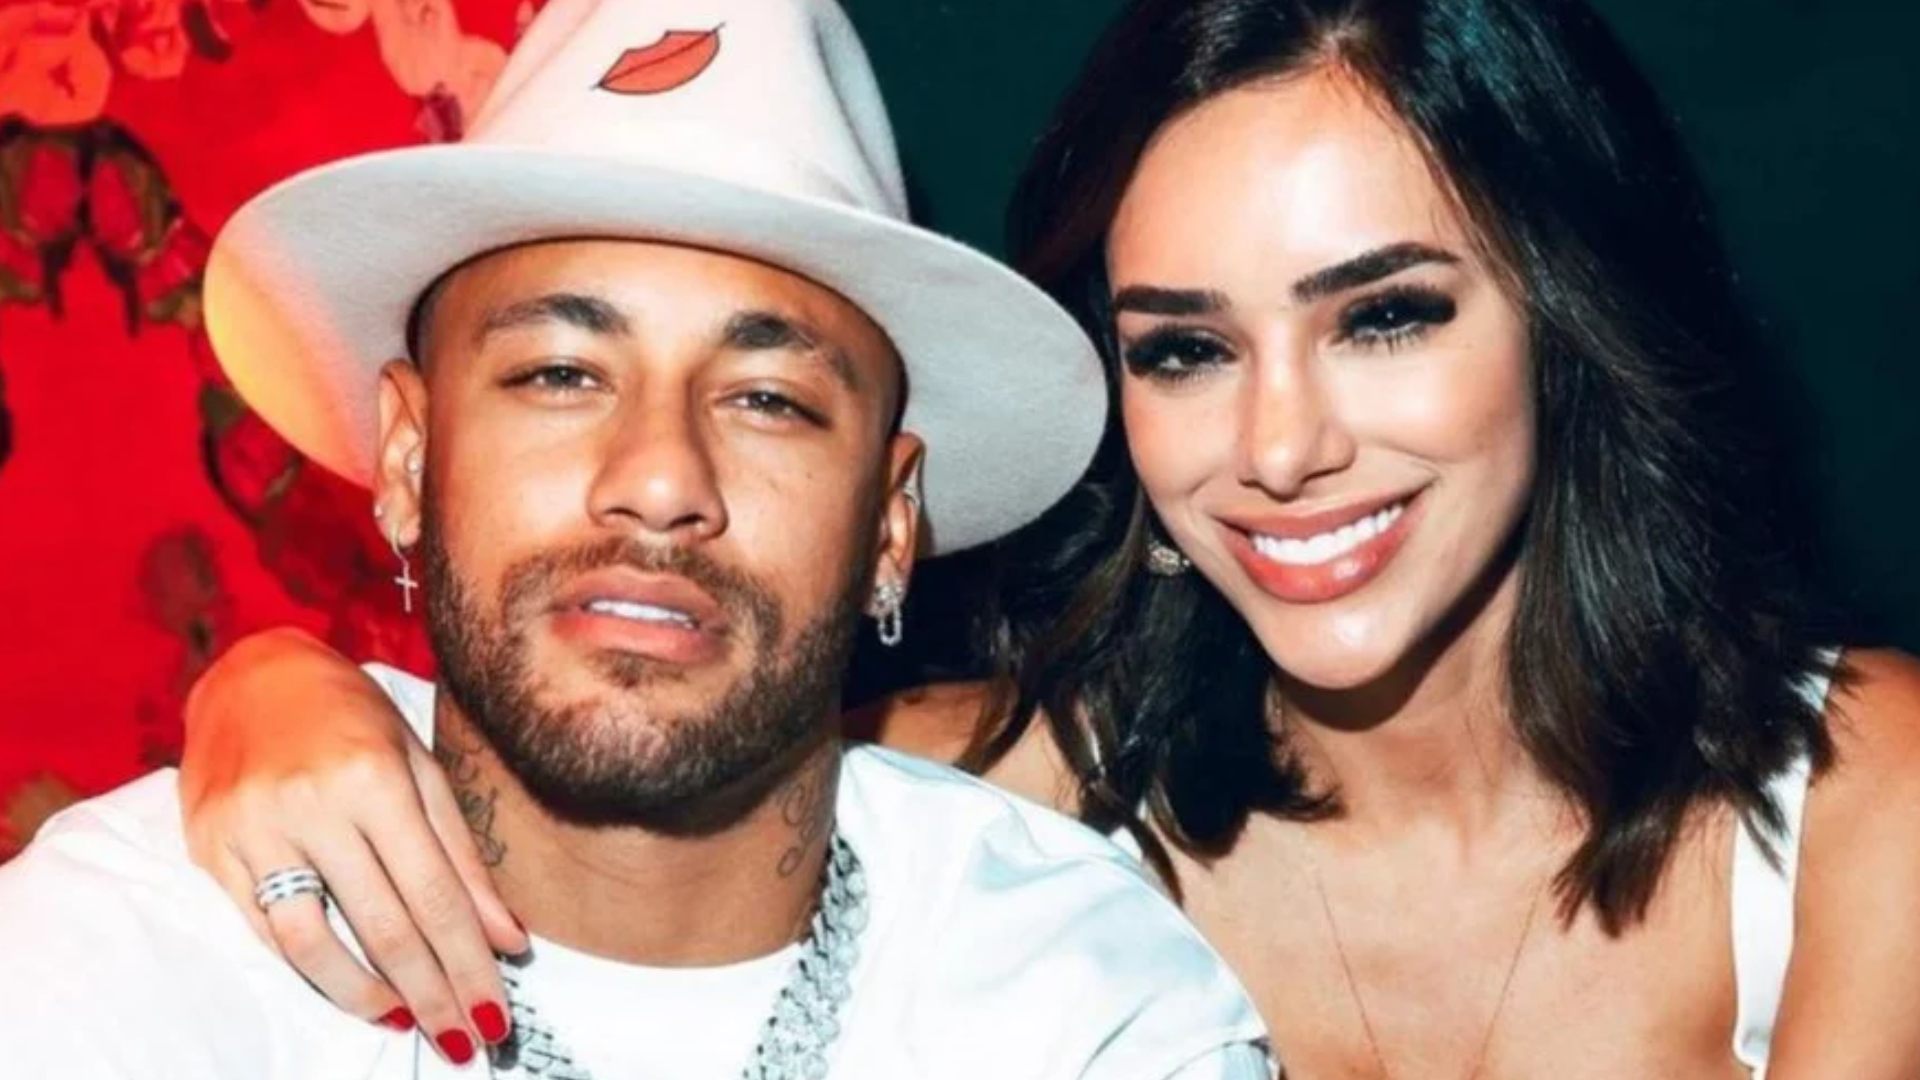 Neymar detona post crítico sobre Bruna Biancardi e defende relação: “Não fala o que não sabe”